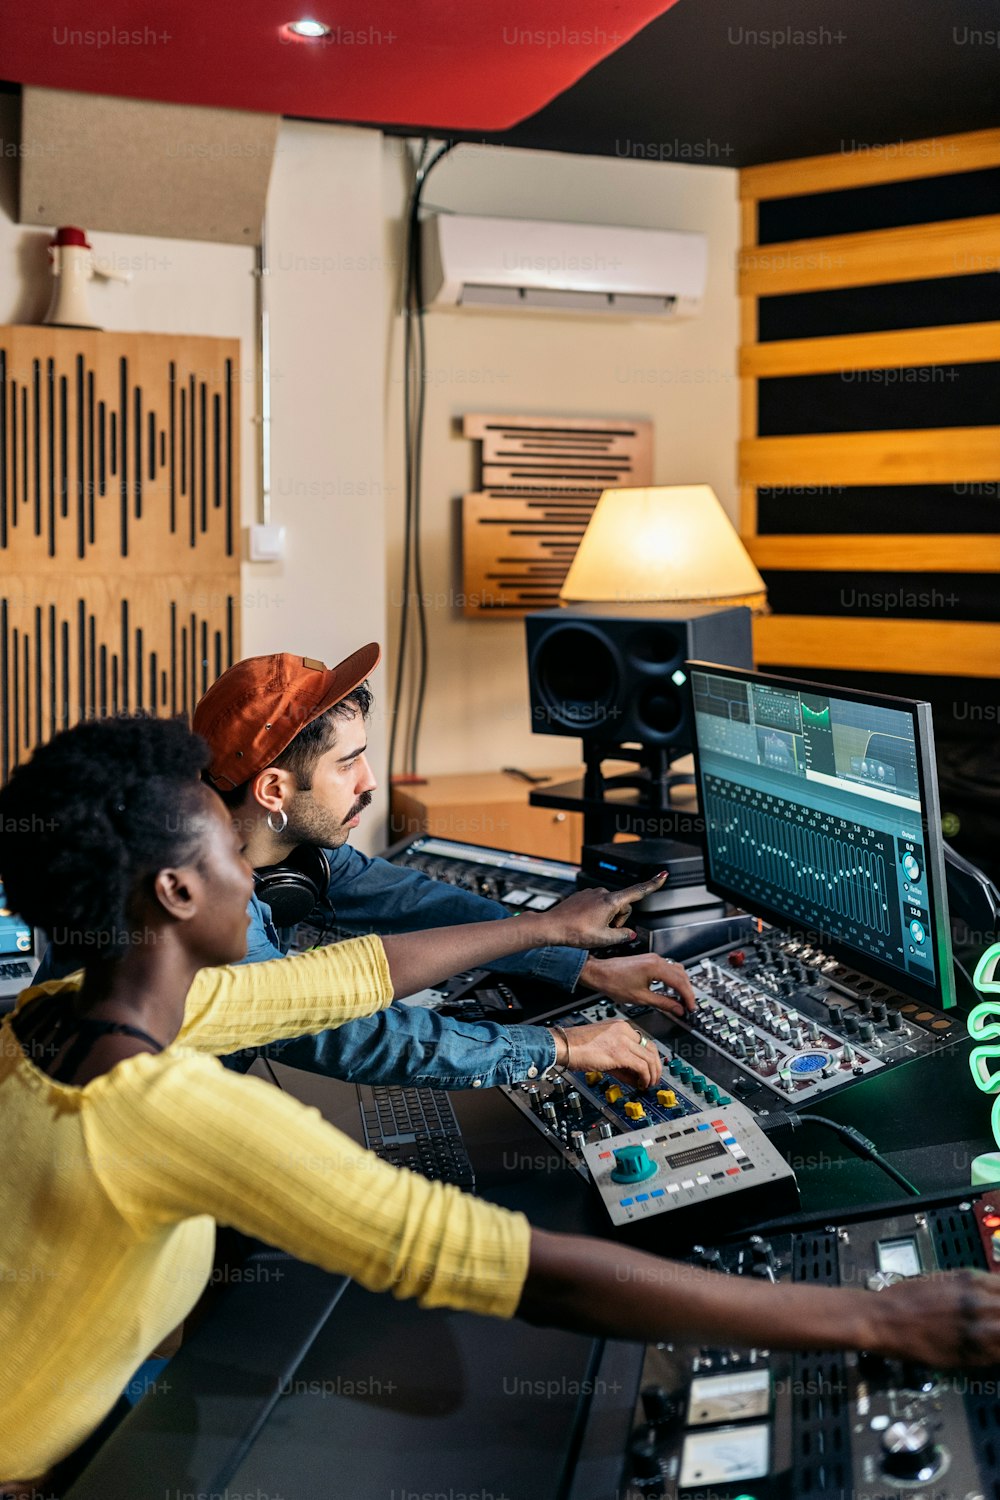 Banque d’images d’un chanteur noir heureux travaillant dans un studio de musique professionnel avec un jeune producteur de musique.